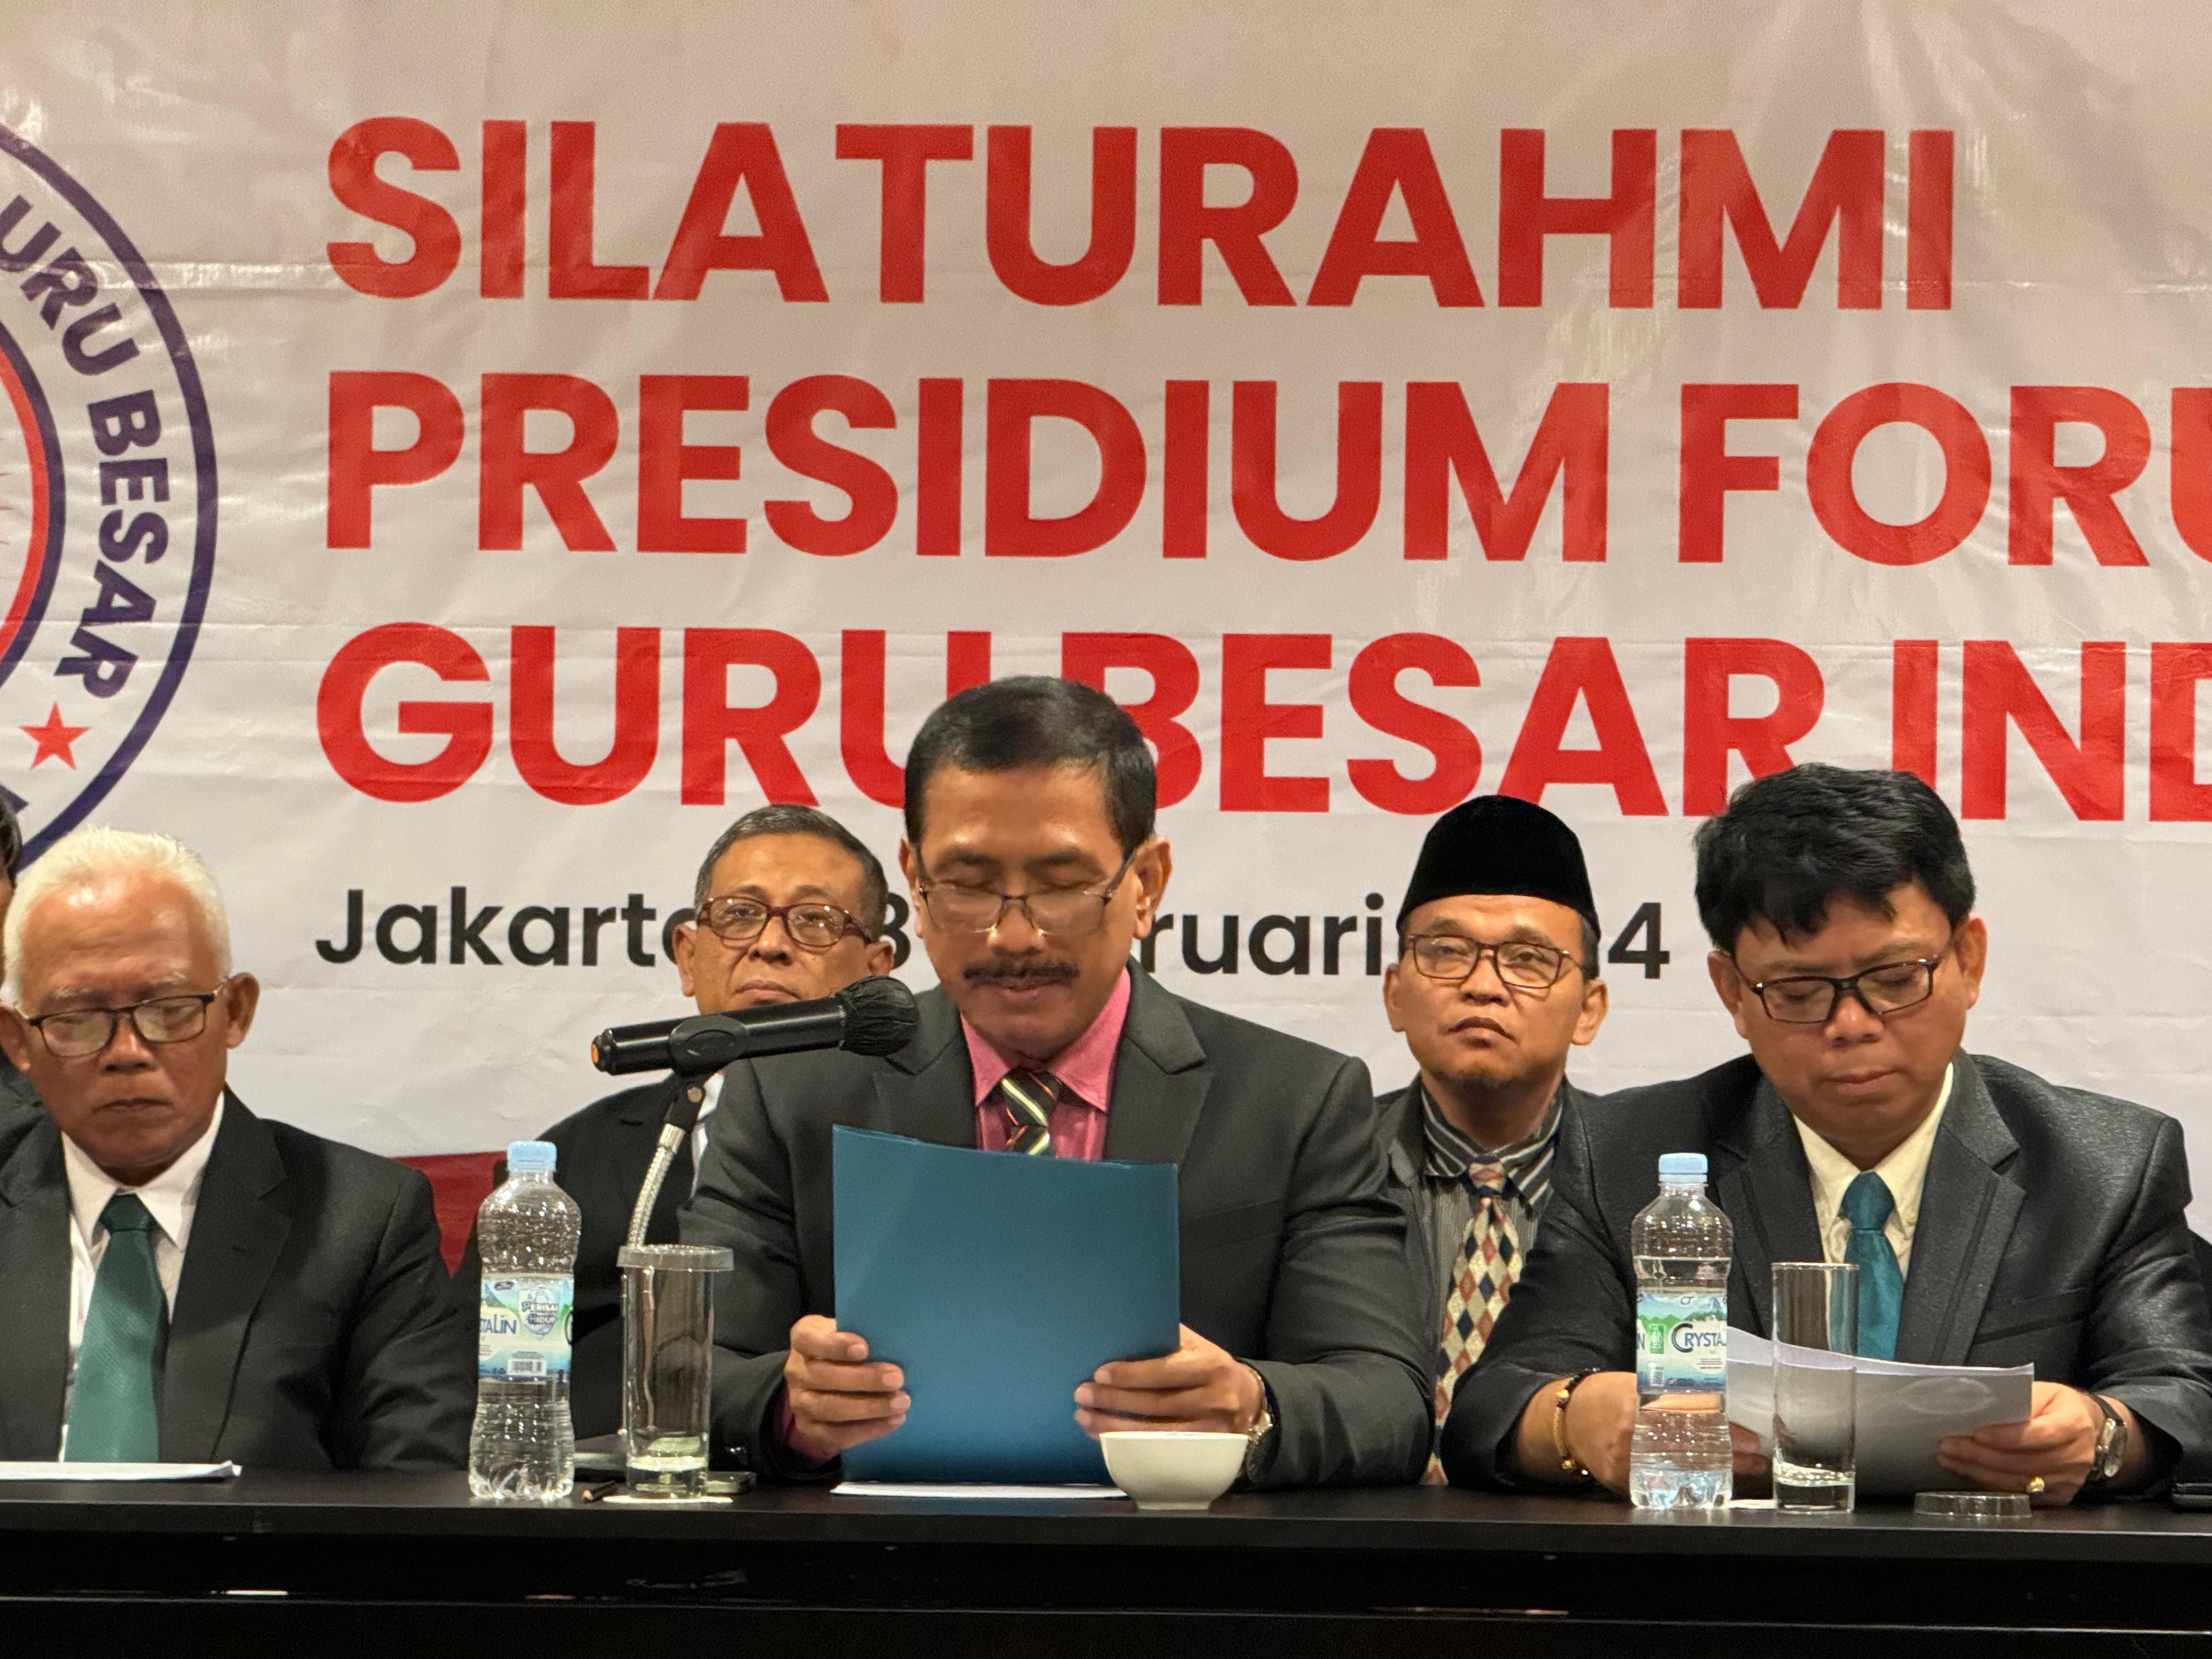 Forum Guru Besar Indonesia Himbau Civitas Akademika Hindari Pernyataan Yang Menggiring Opini Politik Elektoral